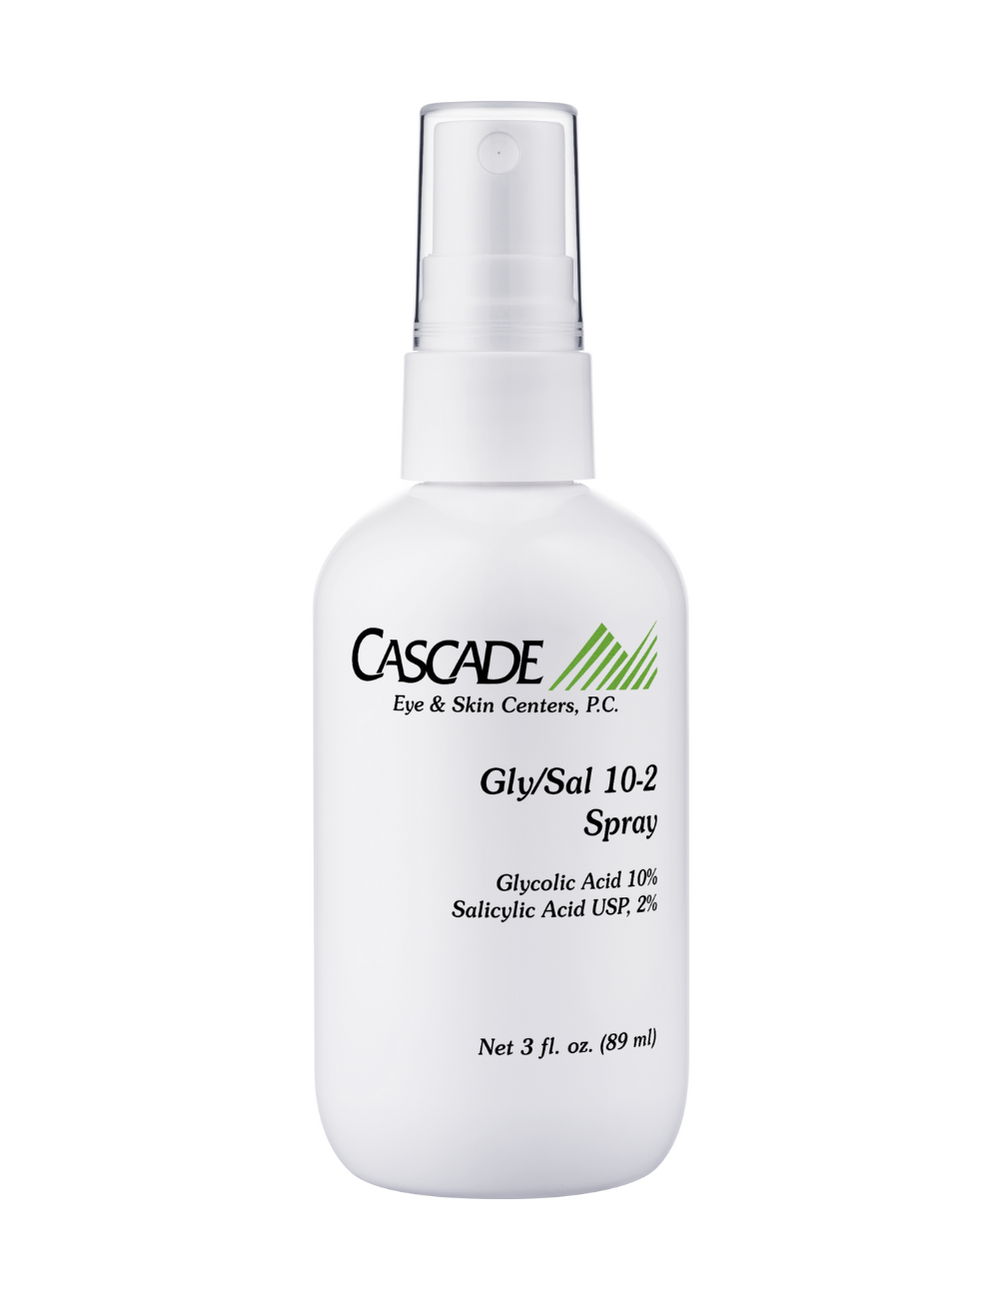 GLY/SAL Acne Body Spray